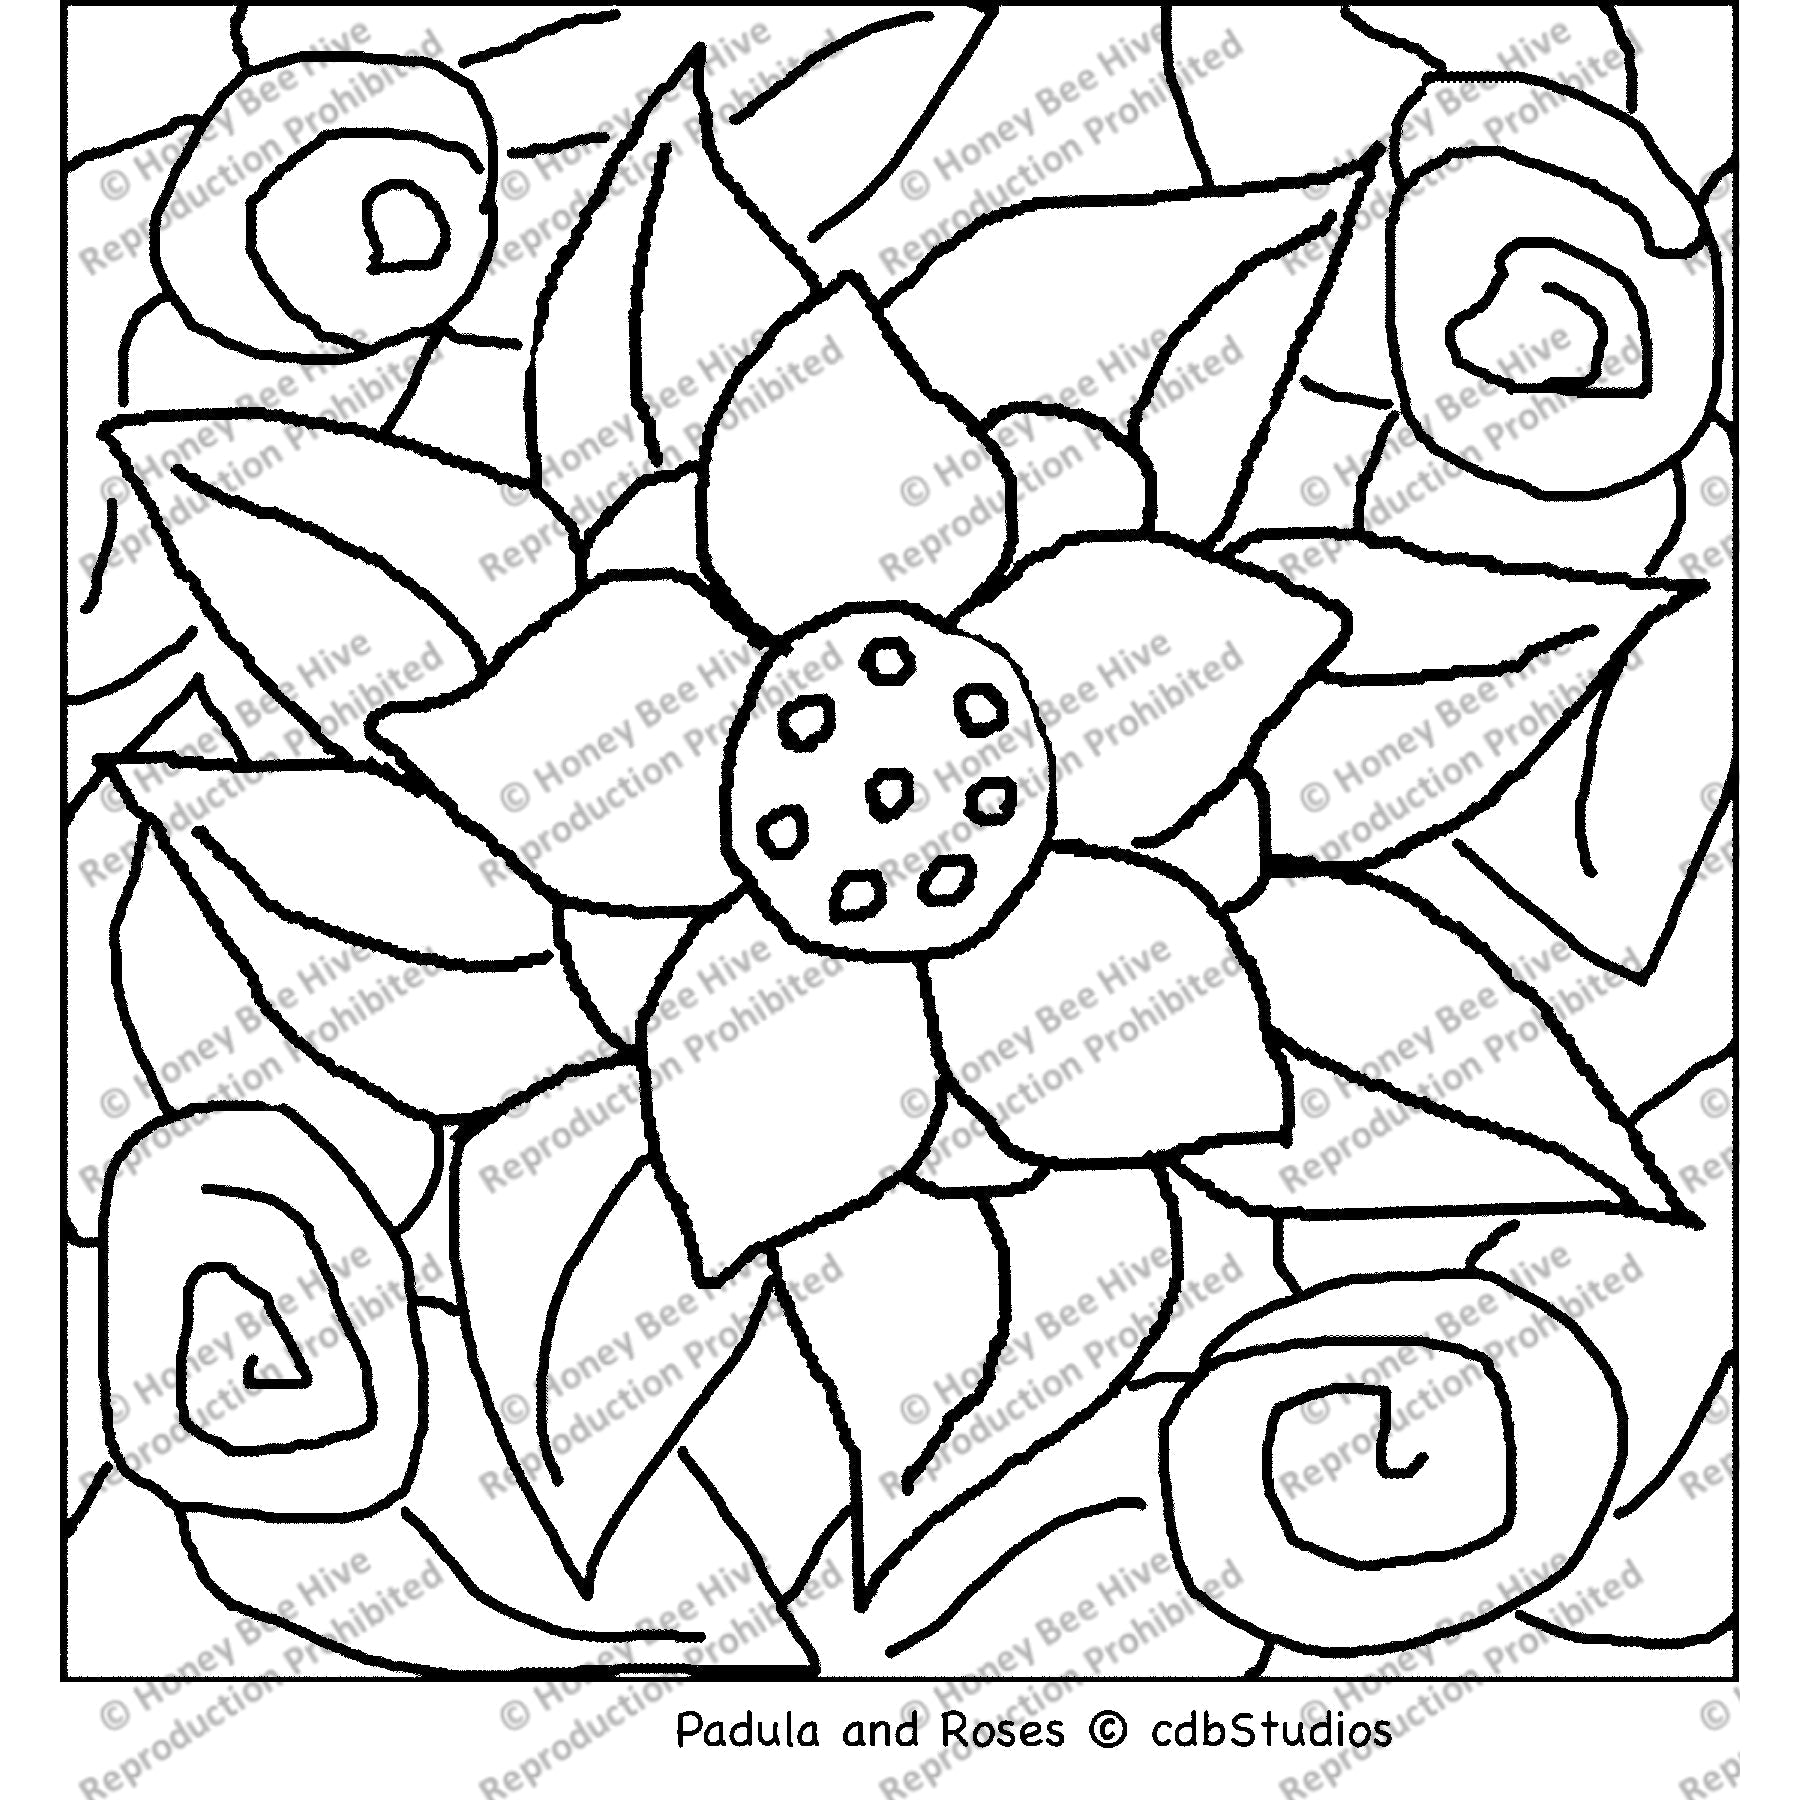 Padula and Roses, rug hooking pattern